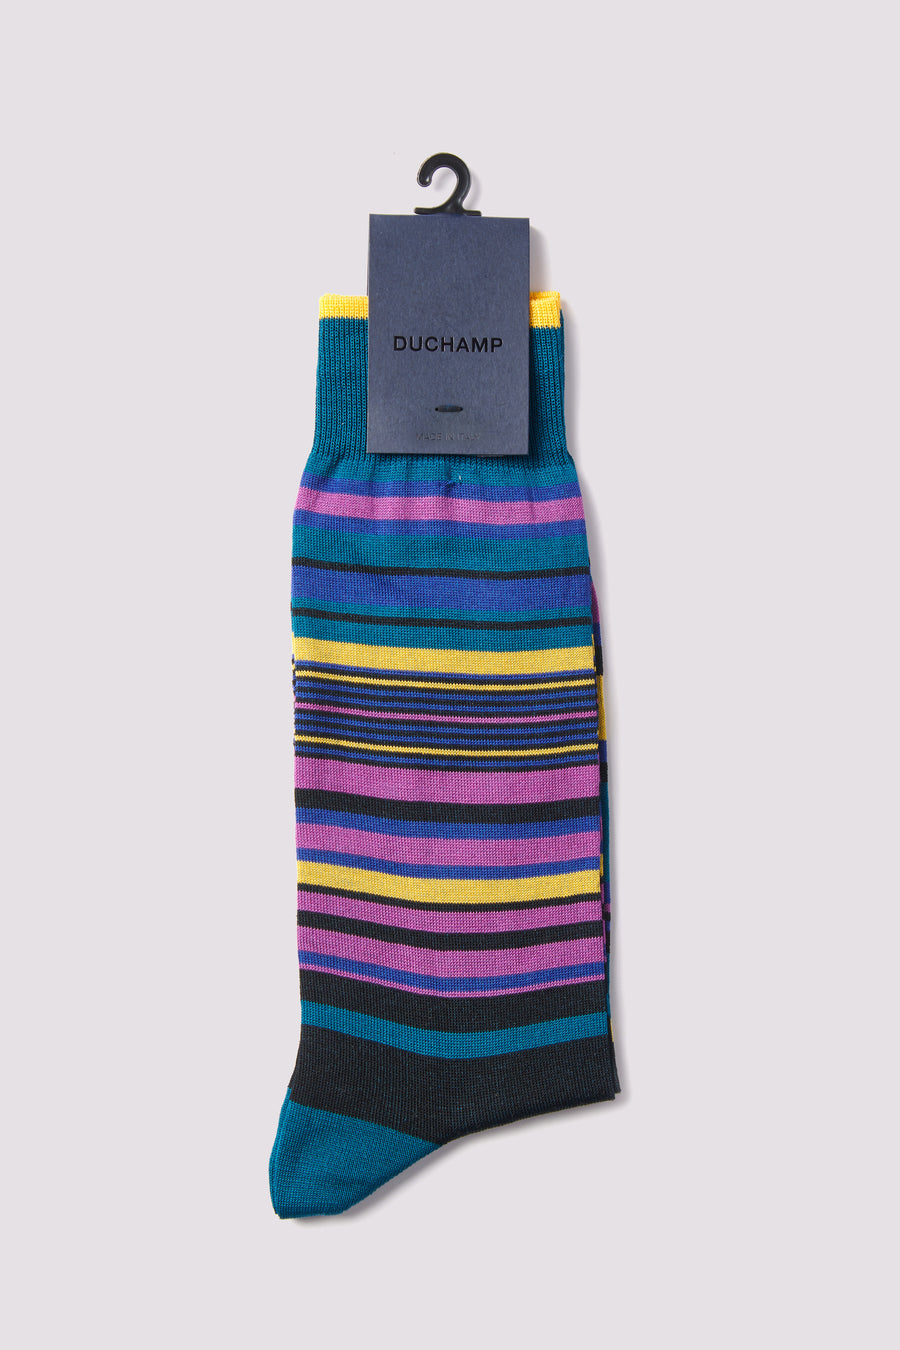 Multi-Stripe Socks in Teal